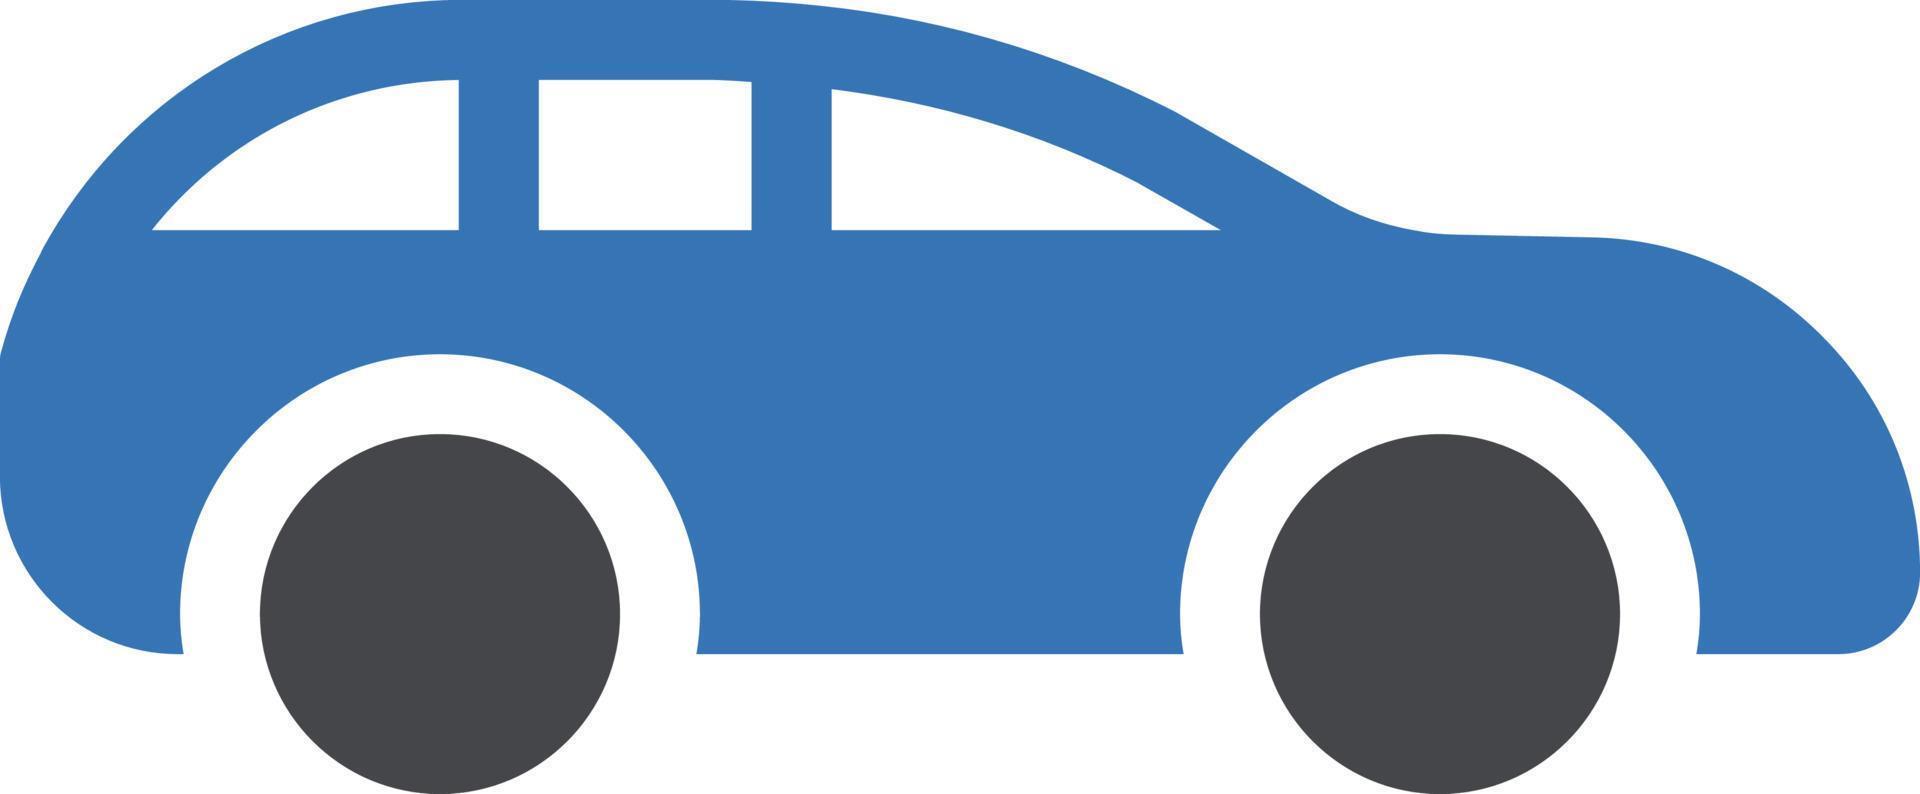 illustrazione vettoriale del carro su uno sfondo. simboli di qualità premium. icone vettoriali per il concetto e la progettazione grafica.